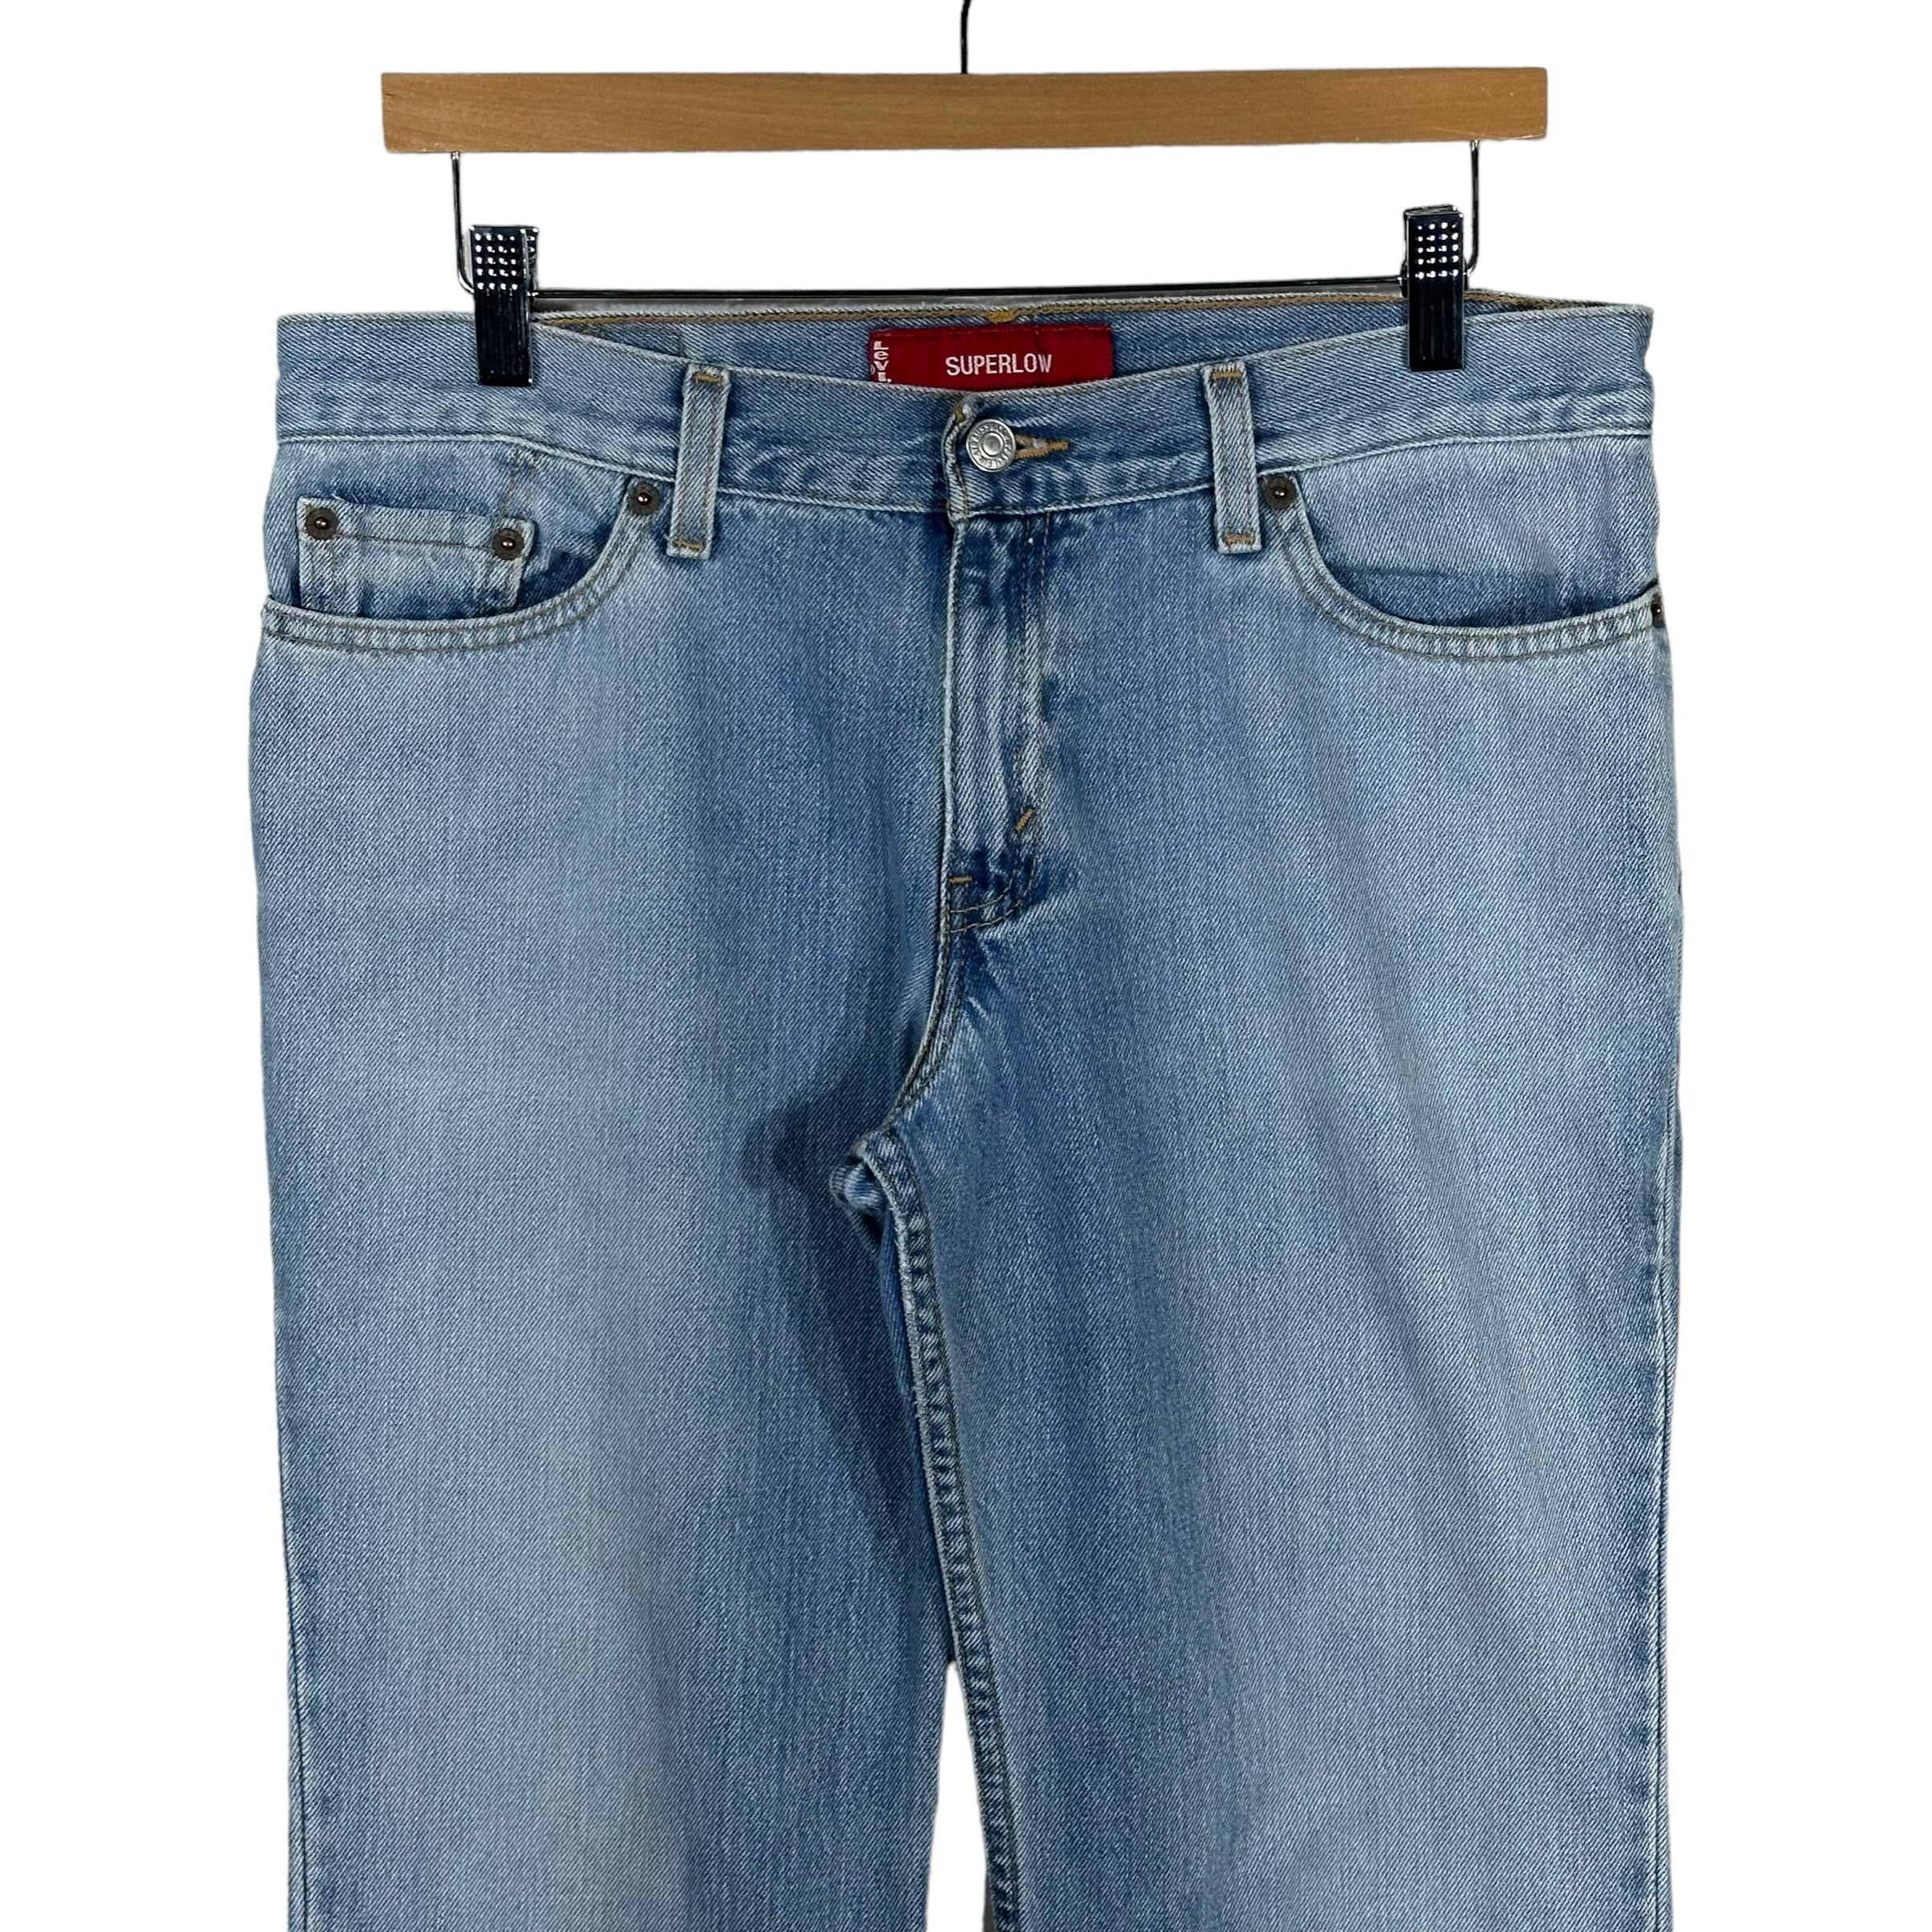 Vintage Levis 518 Denim Jeans